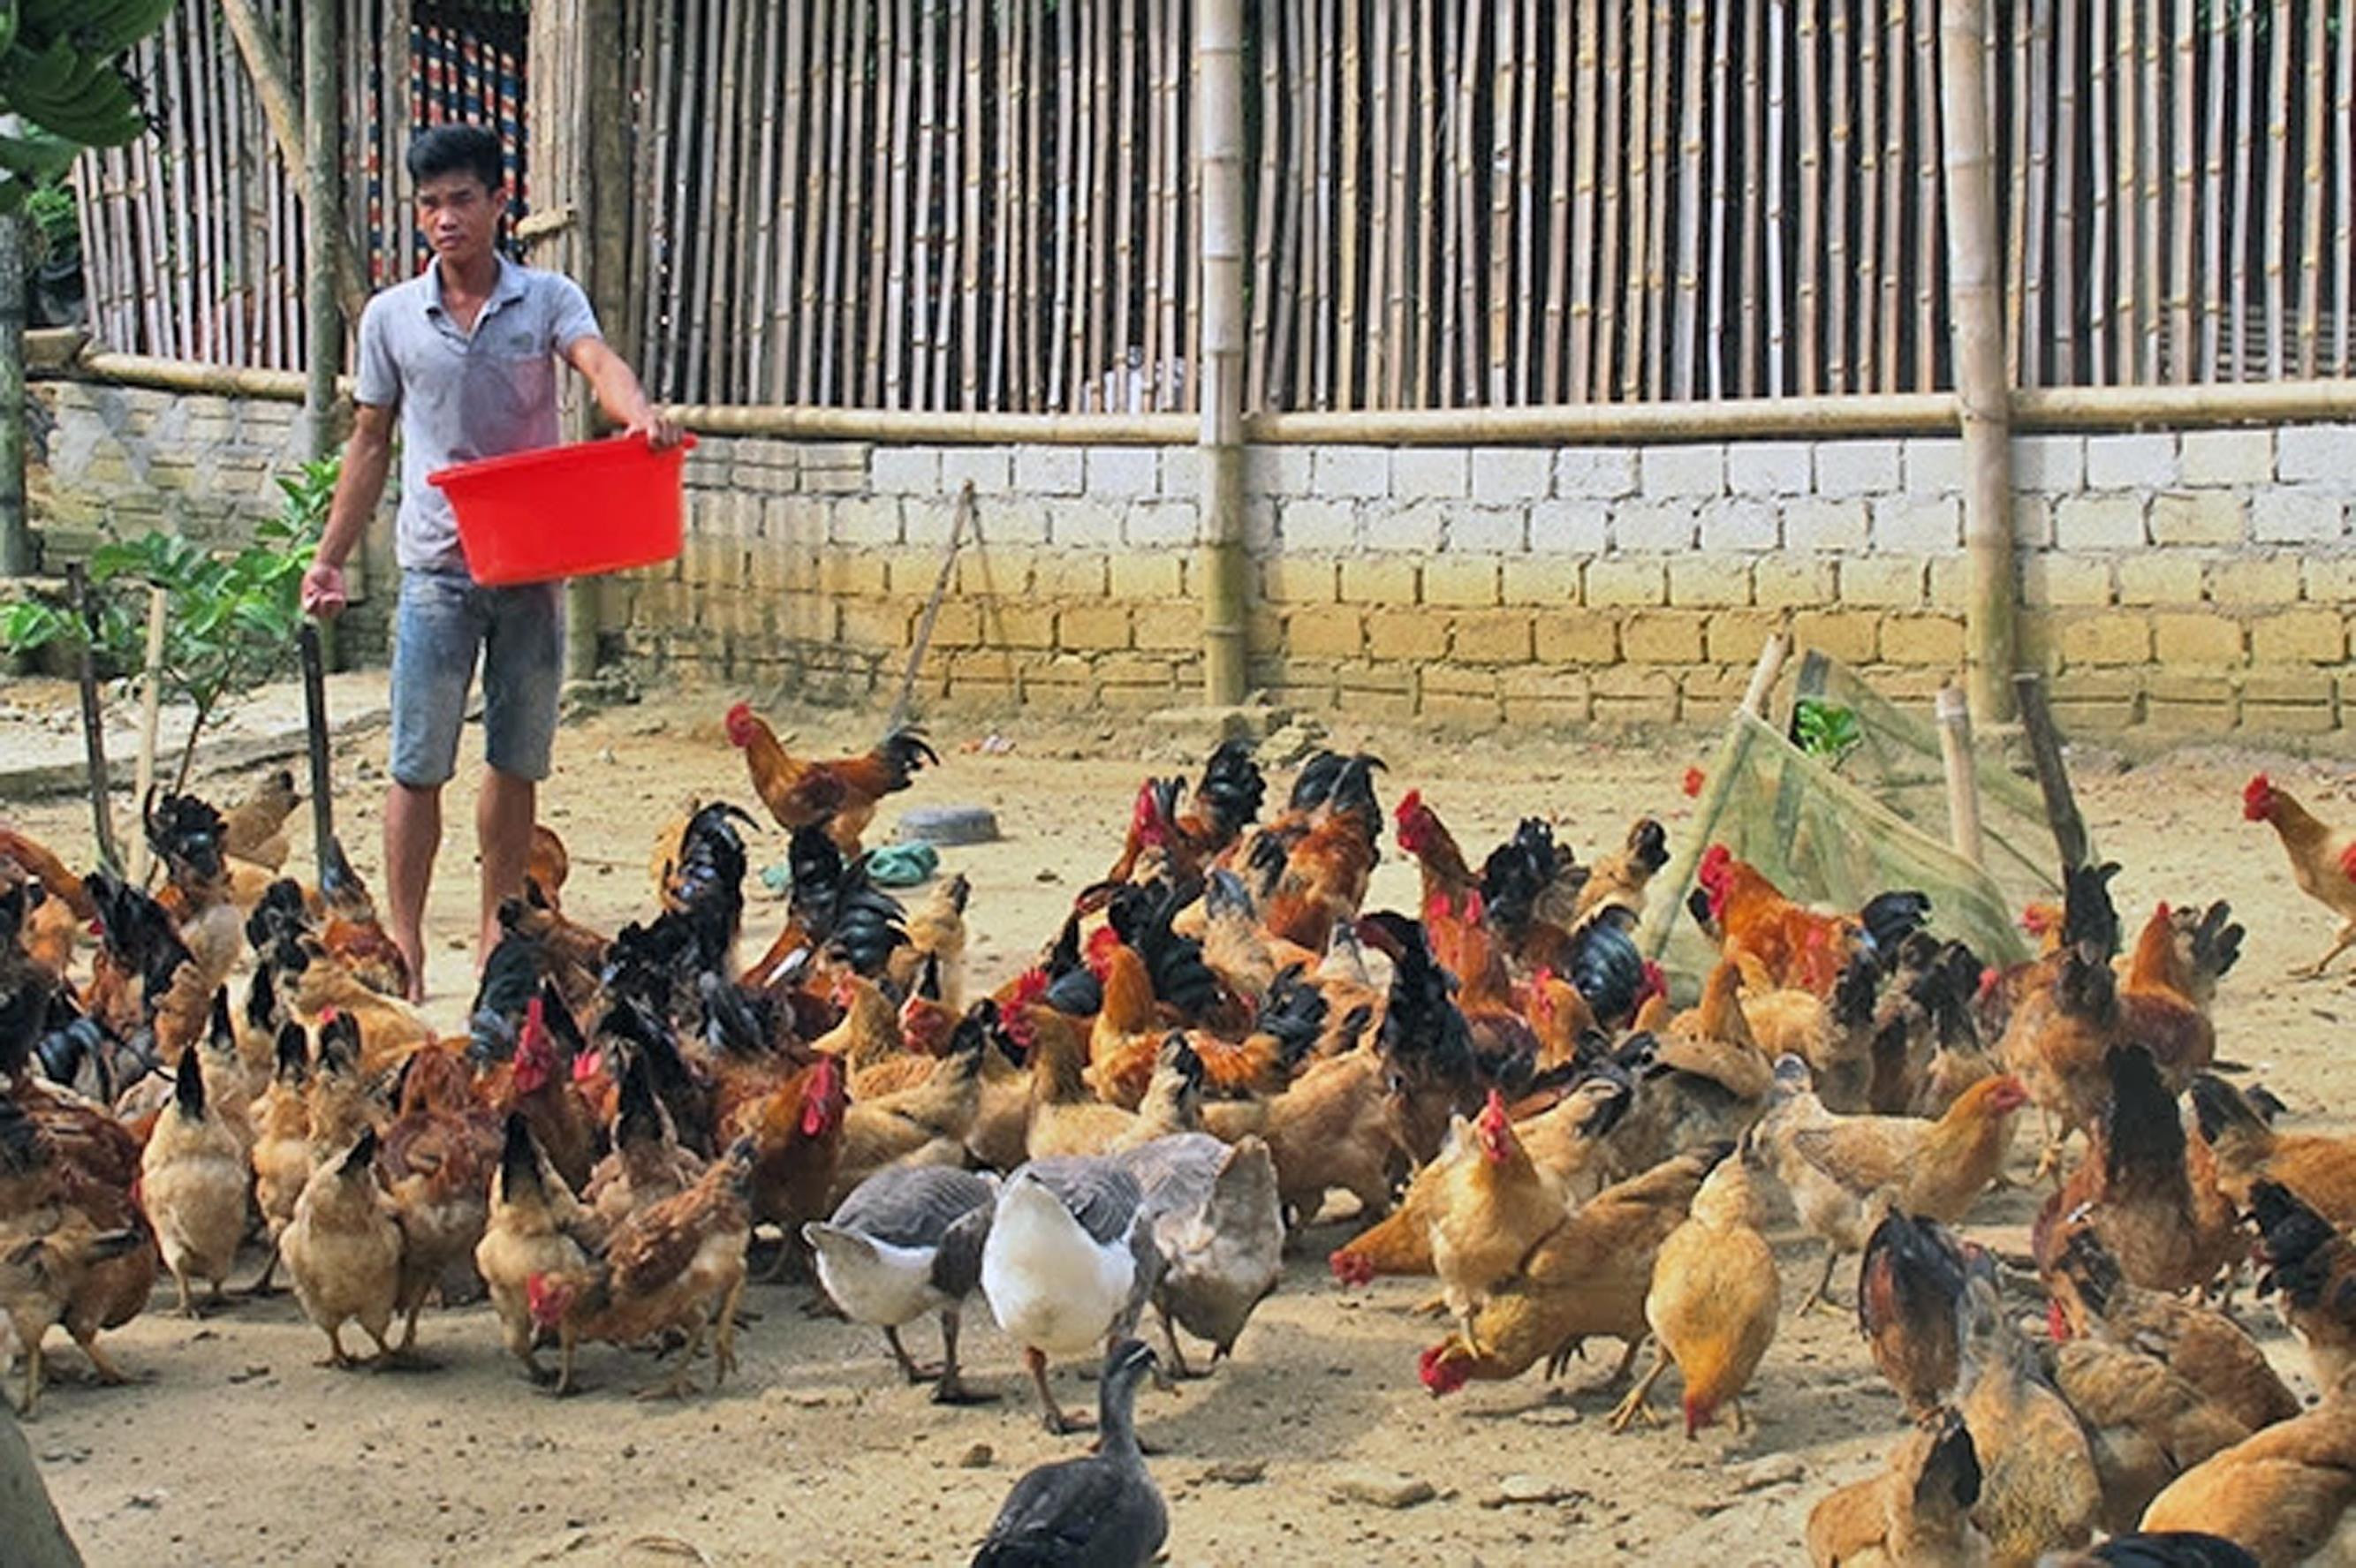 Trang trại chăn nuôi tổng hợp của anh Thái Hữu Trọng ở xã Quế Sơn (Quế Phong).  Ảnh: Việt Phương